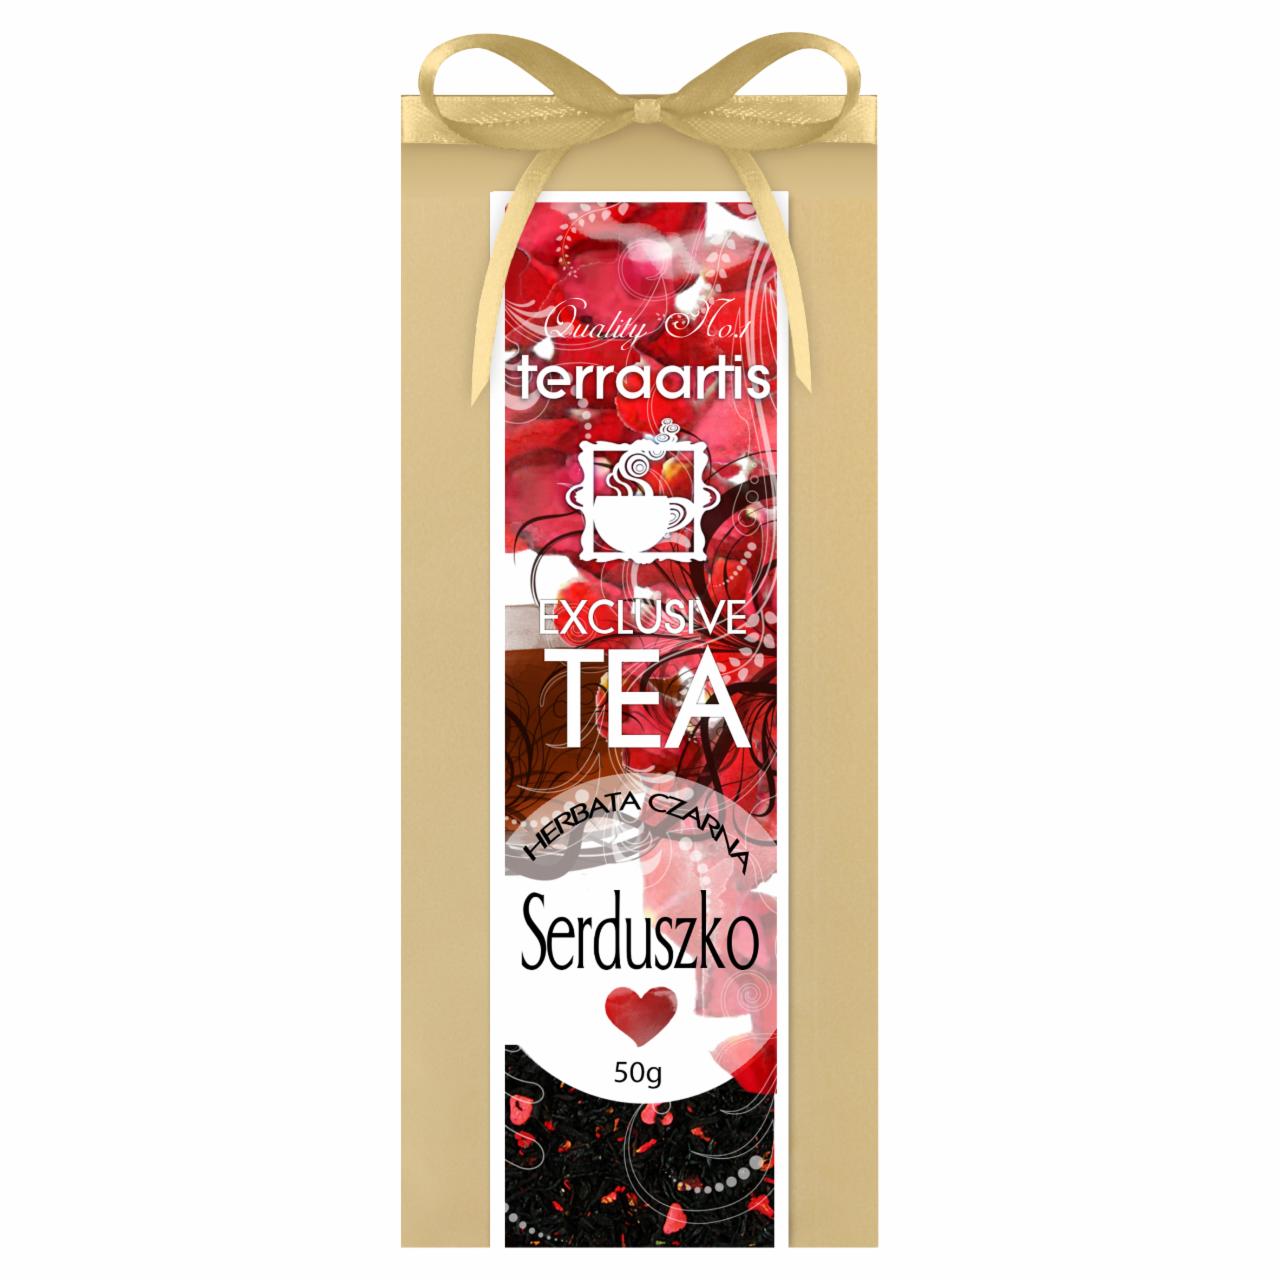 Zdjęcia - Terraartis Exclusive Tea Herbata czarna serduszko 50 g